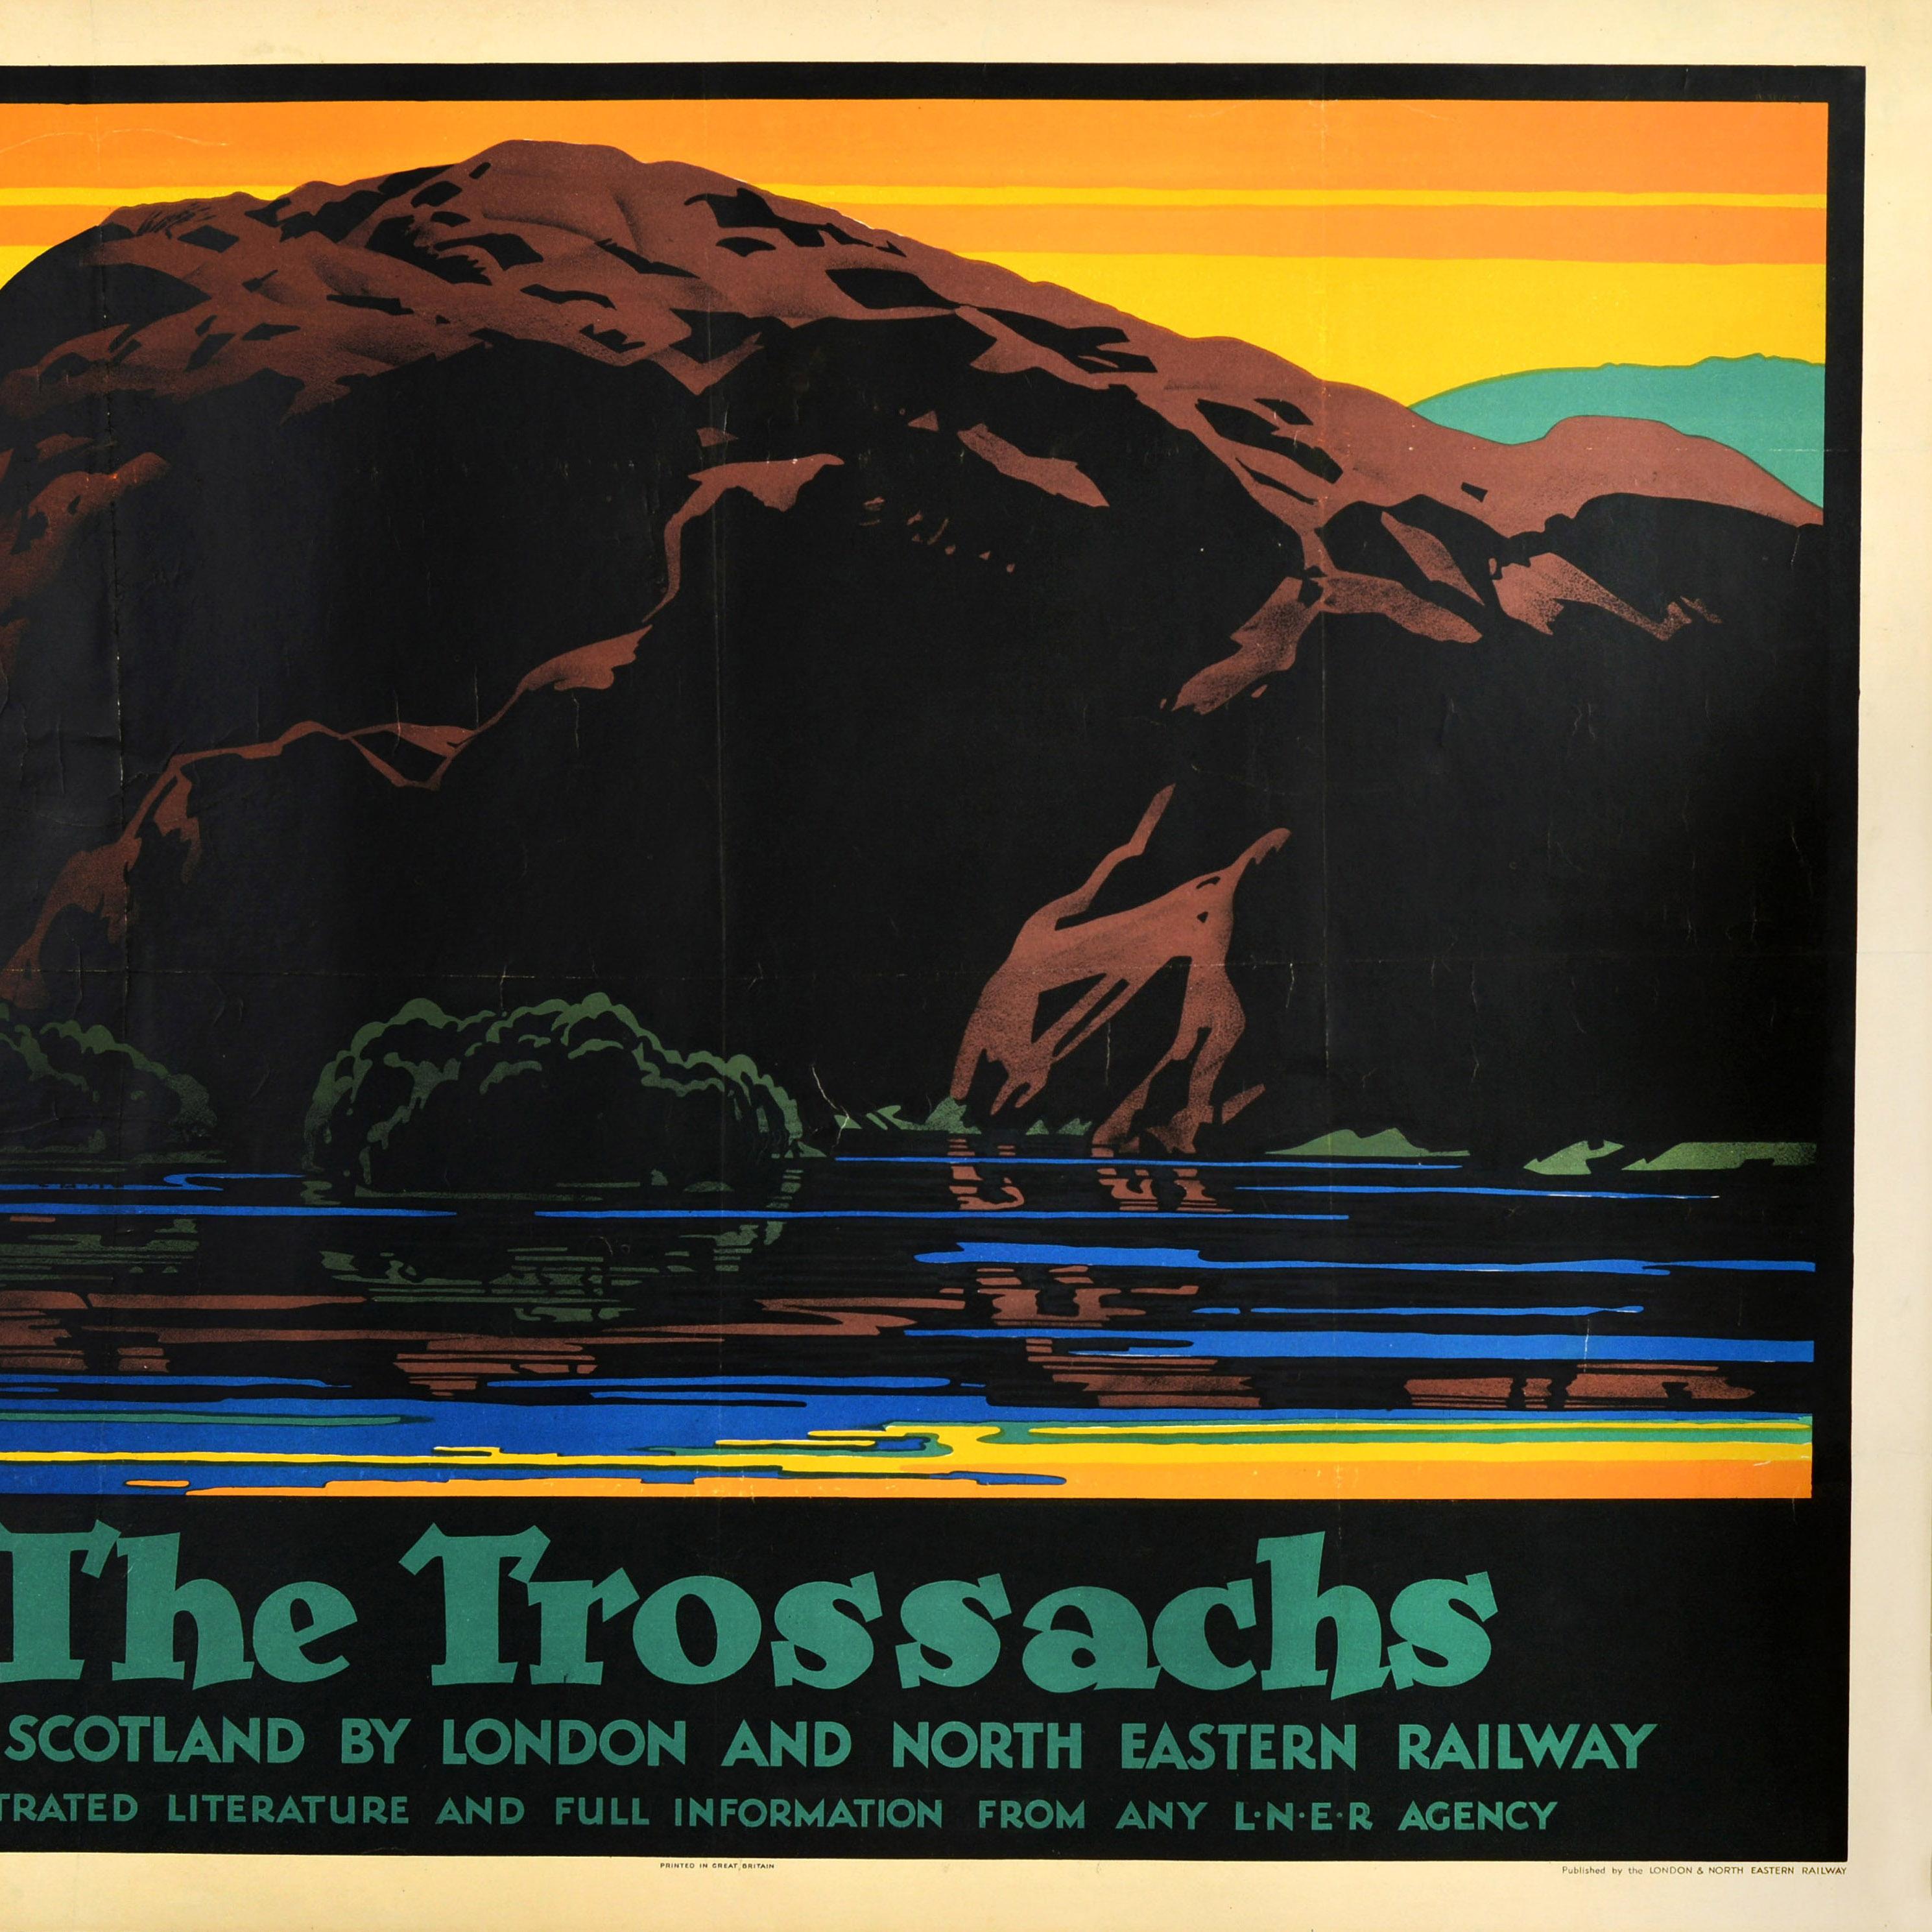 Original LNER Zugreiseplakat, entworfen von einem der führenden englischen Plakatkünstler Austin Cooper (1890-1964): The Trossachs Tour Scotland by London and North Eastern Railway mit einem atemberaubenden Bild, das das ruhige Wasser eines Sees